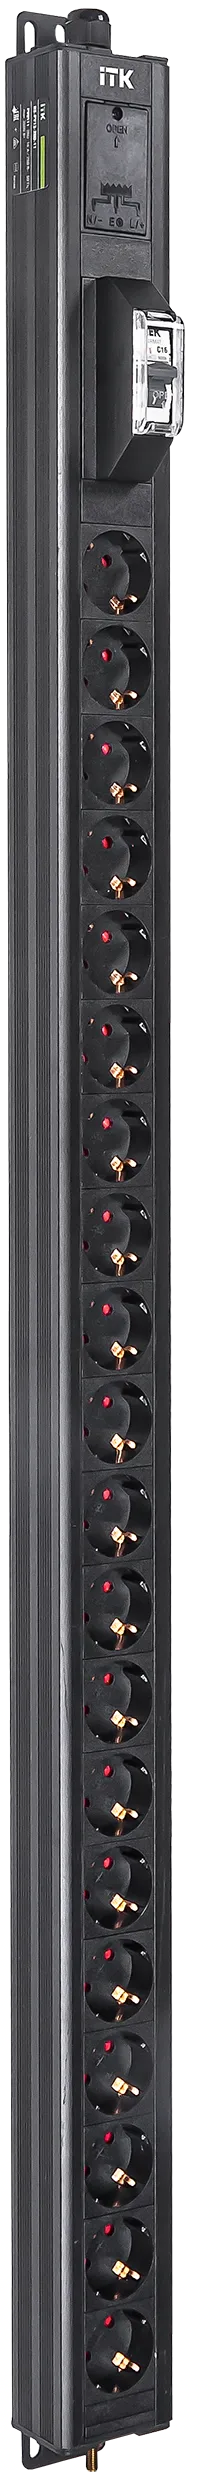 Вертикальный однотипный блок распределения питания PDU ITK включает в себя 20 розеток Schuko. PDU ITK изготавливается из высококачественных термостойких материалов и пластмасс, оснащается 2,6 метровым кабелем электропитания с вилкой Schuko. PDU ITK прекрасно справляется с задачей по электроснабжению сетевого оборудования в шкафах и стойках, а также с требованием защиты от токов короткого замыкания и перенапряжения. PDU ITK соответствует российским и международным стандартам качества и устанавливается с помощью кронштейнов, при этом положение кронштейнов можно менять, либо безынструментальным методом при помощи монтажных штифтов.